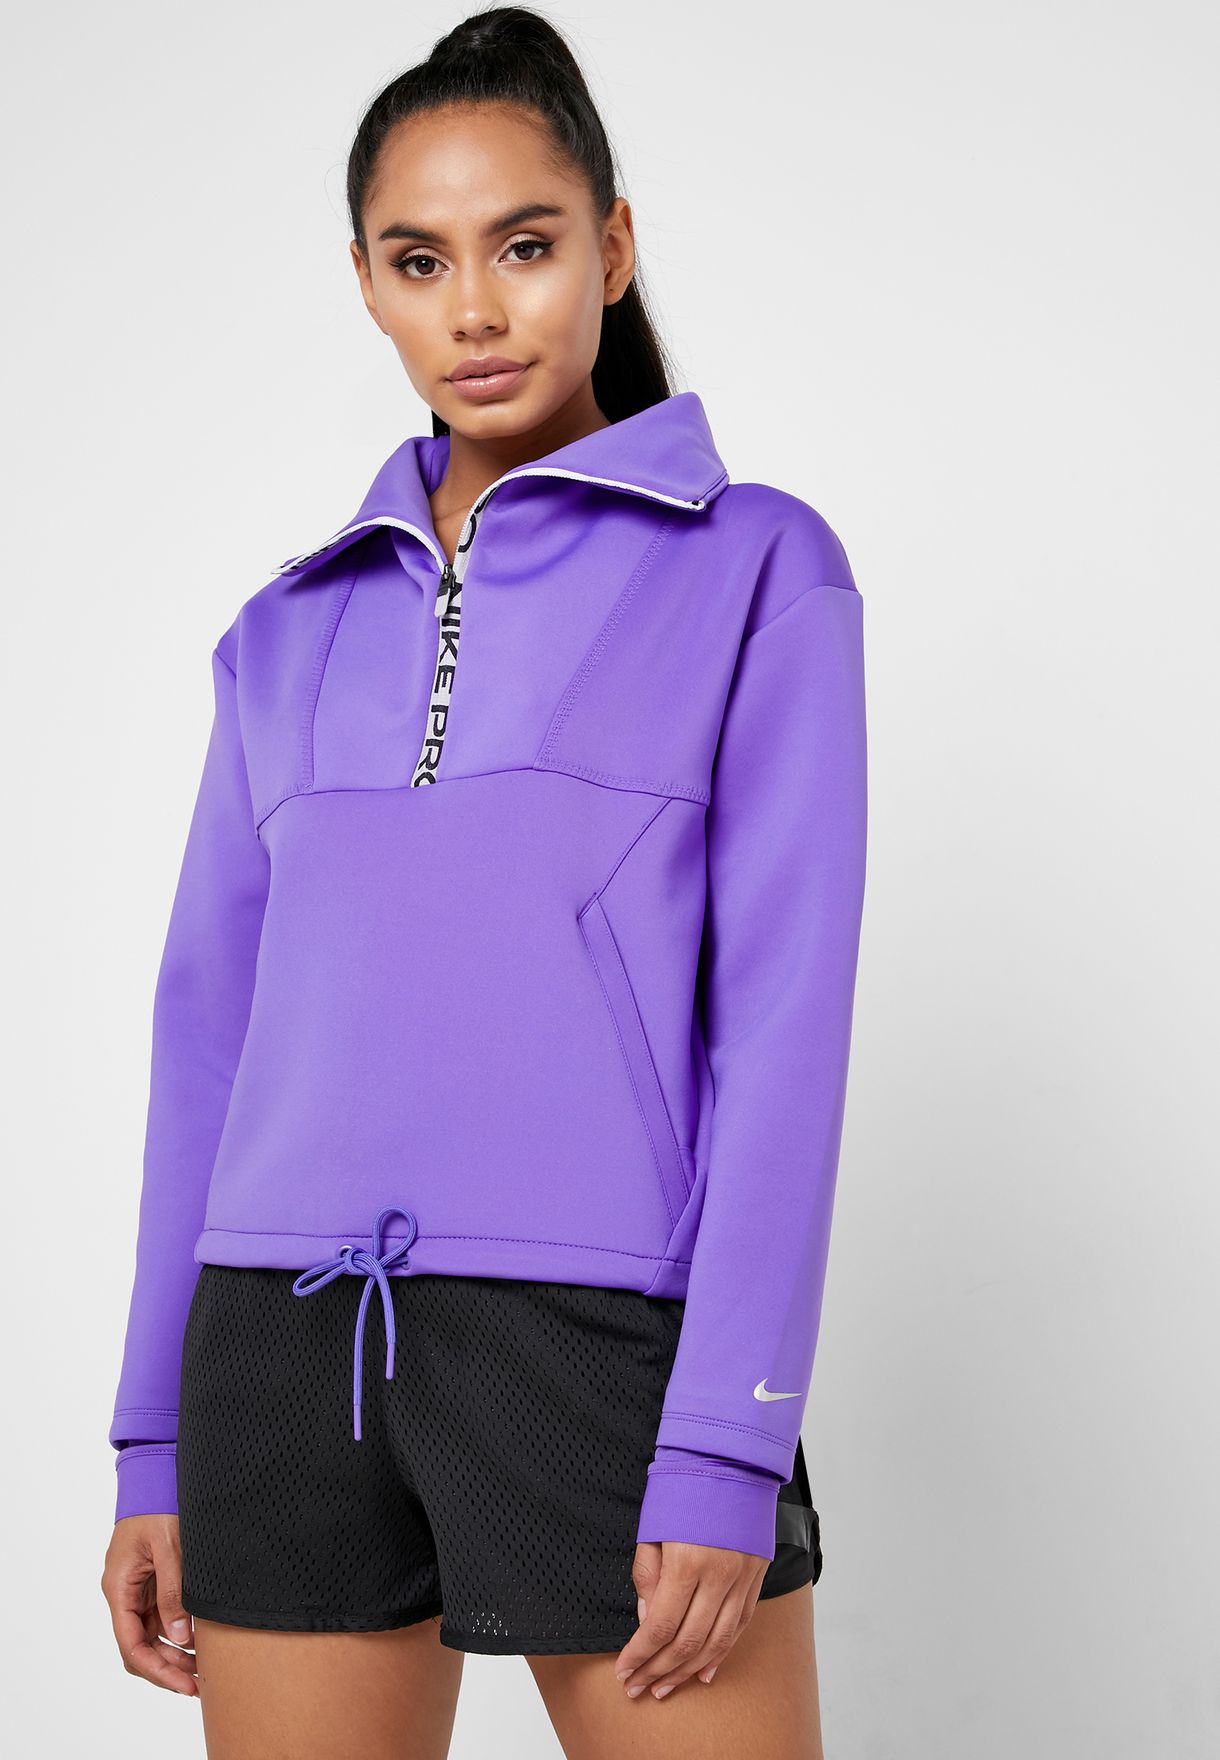 women's nike purple sweatshirt